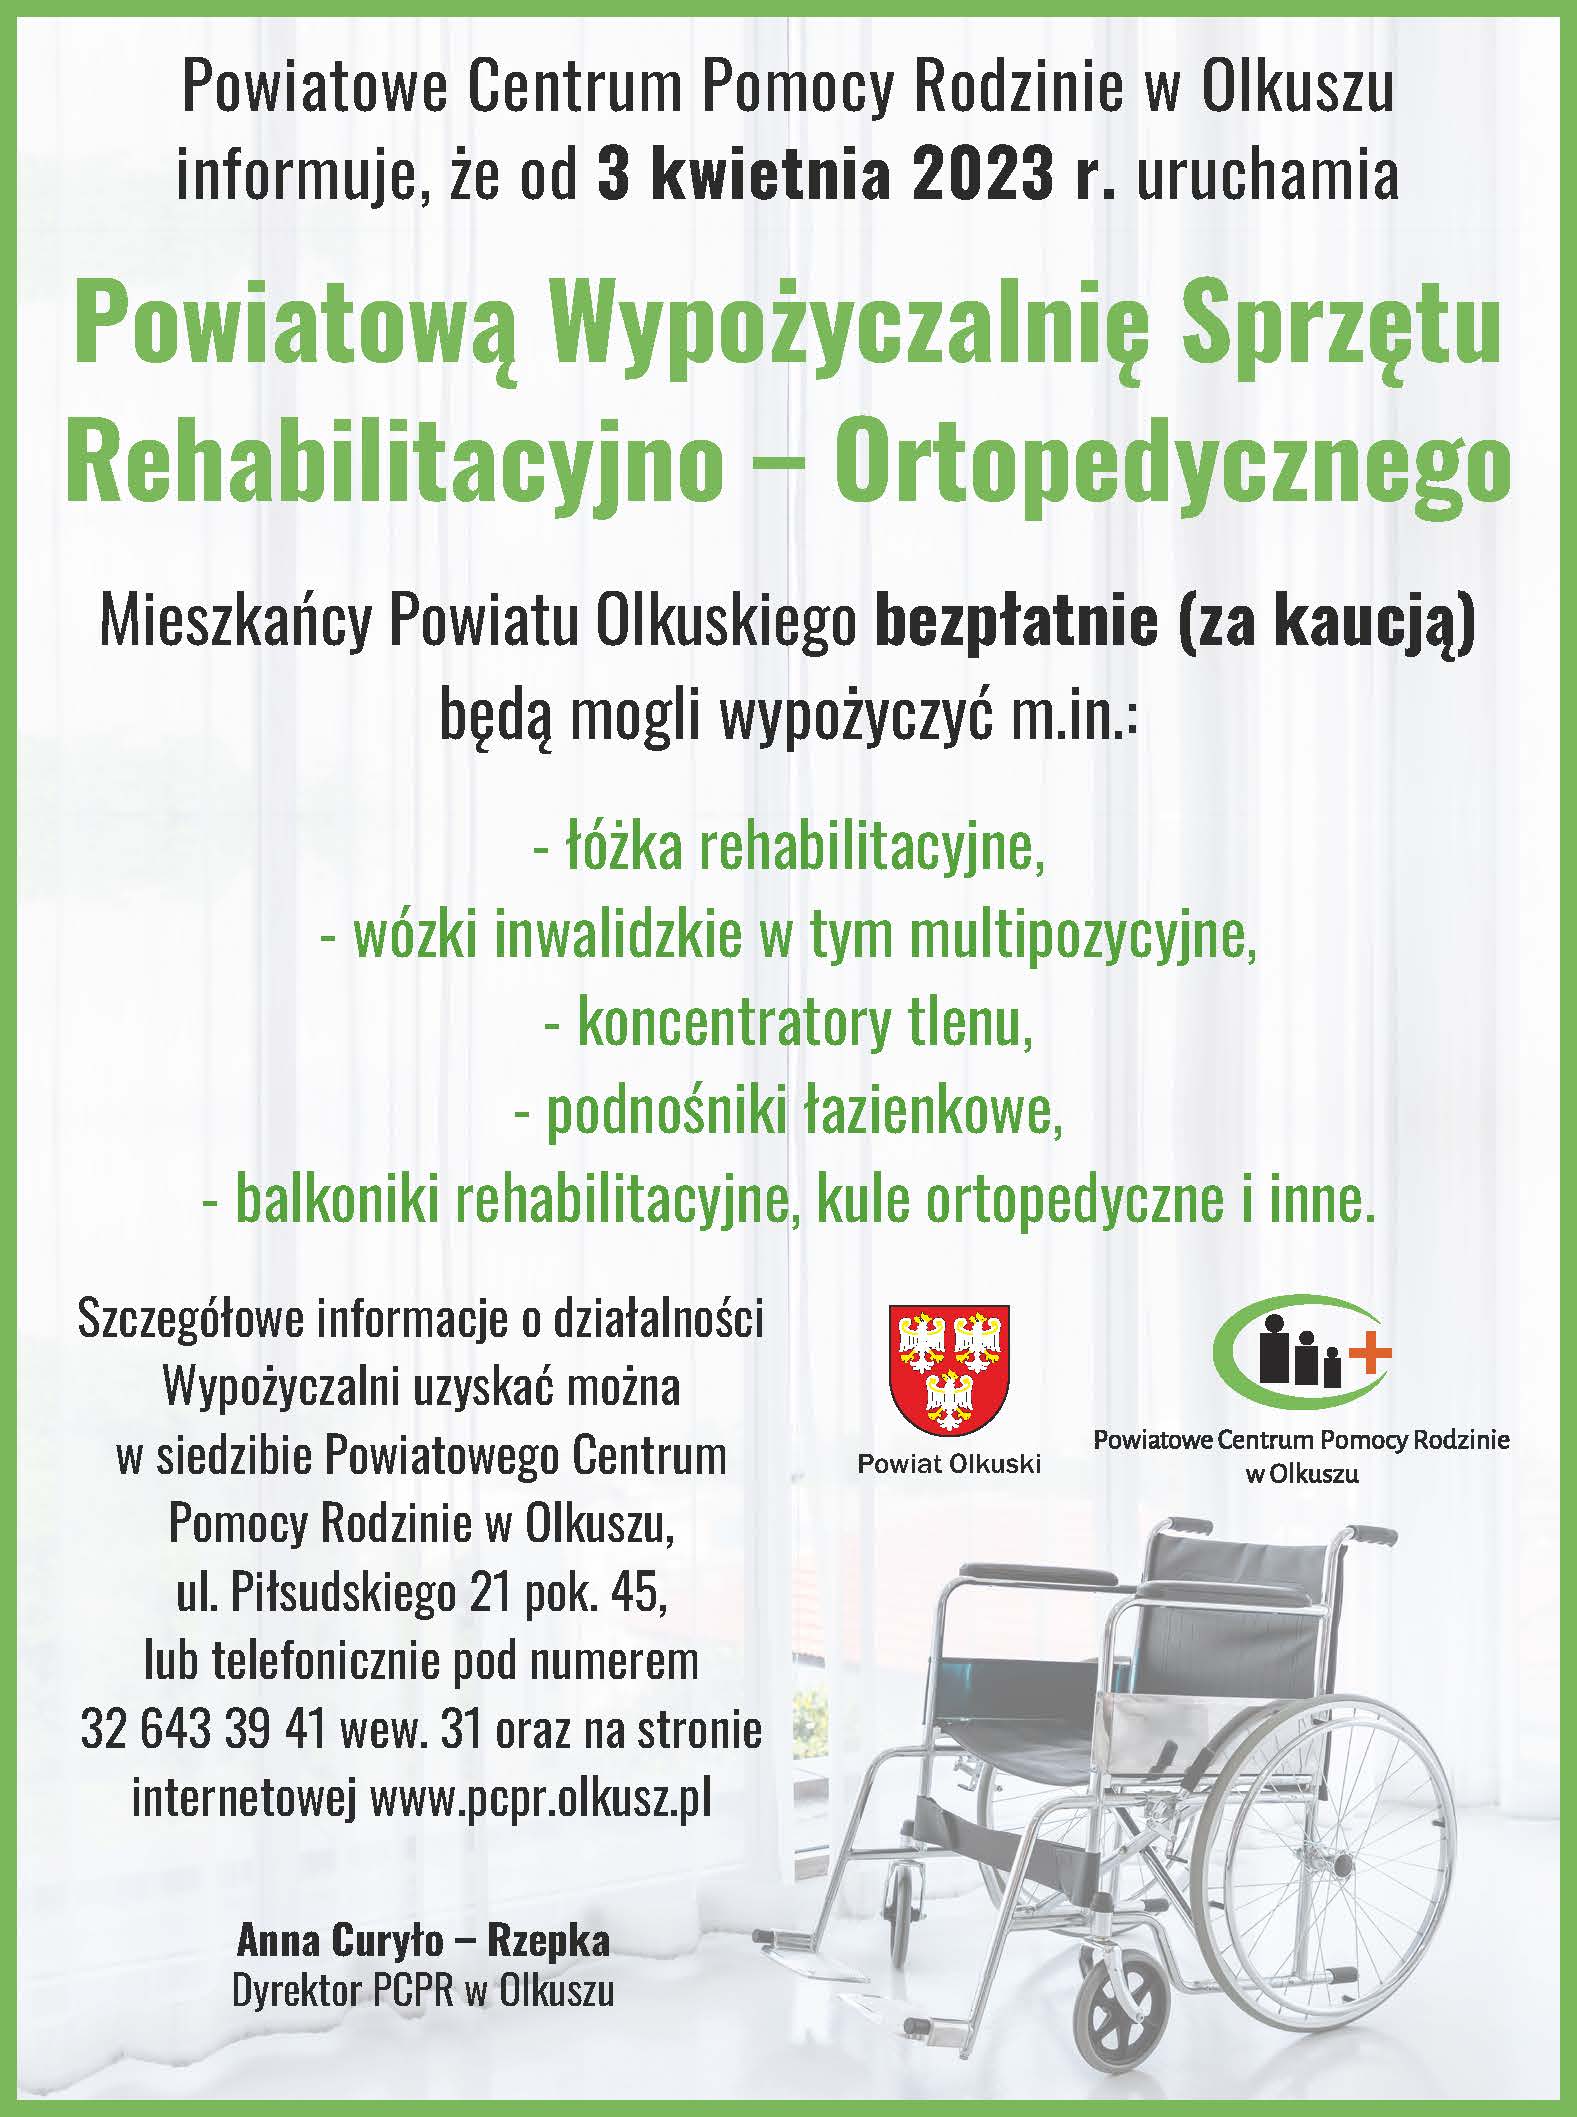 Plakat informujący o Powiatowej Wypożyczalni Sprzętu Rehabilitacyno – Ortopedycznego